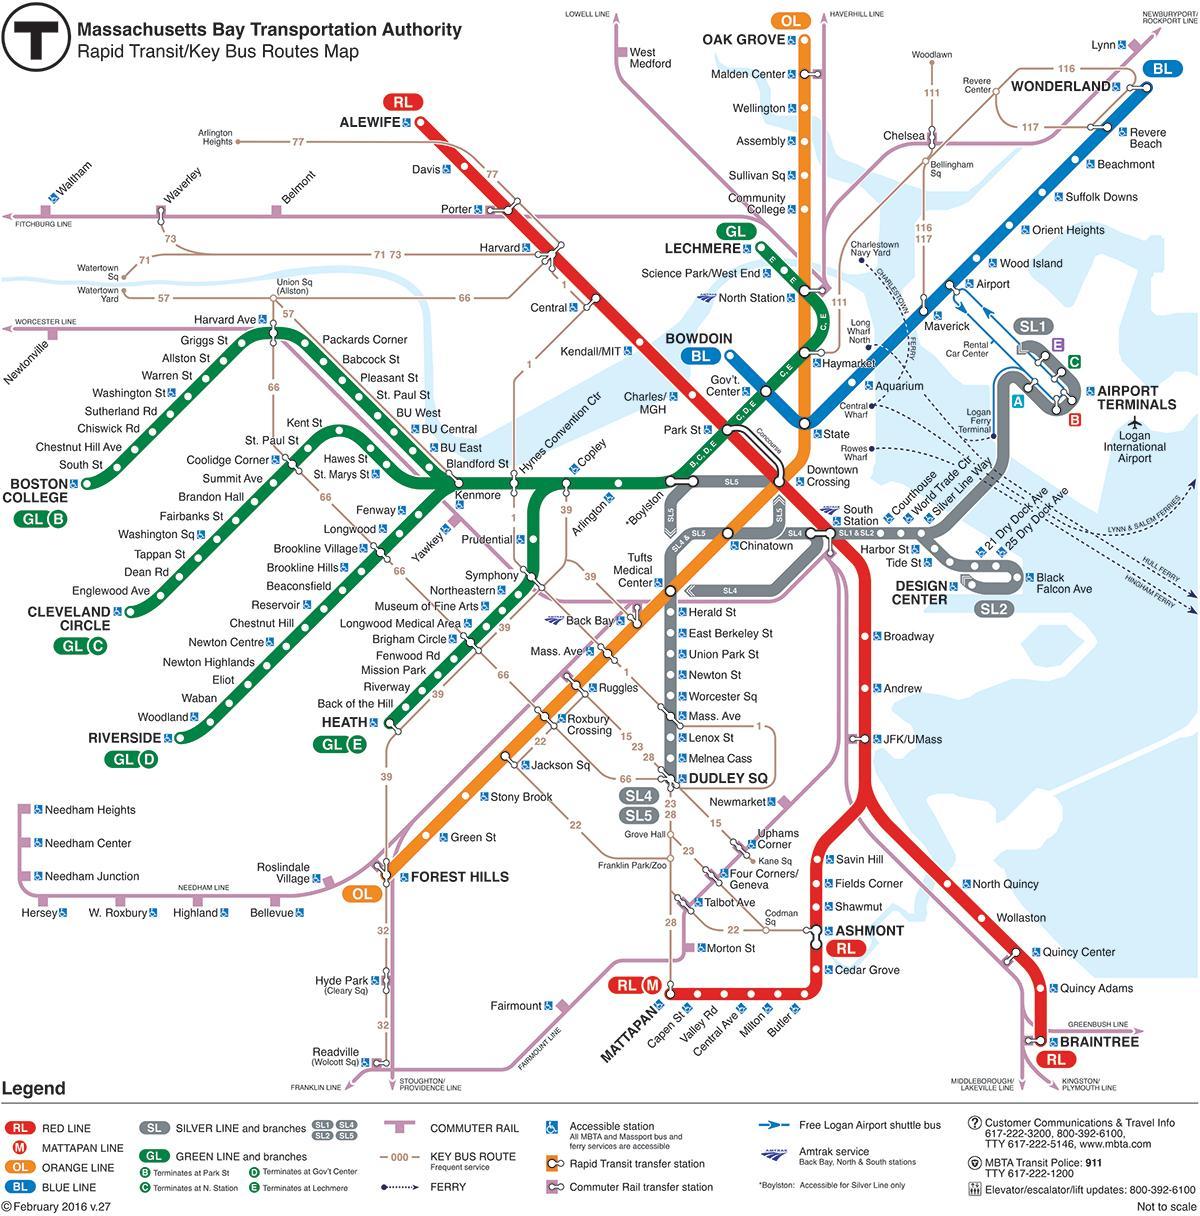 ટી ટ્રેન બોસ્ટન નકશો